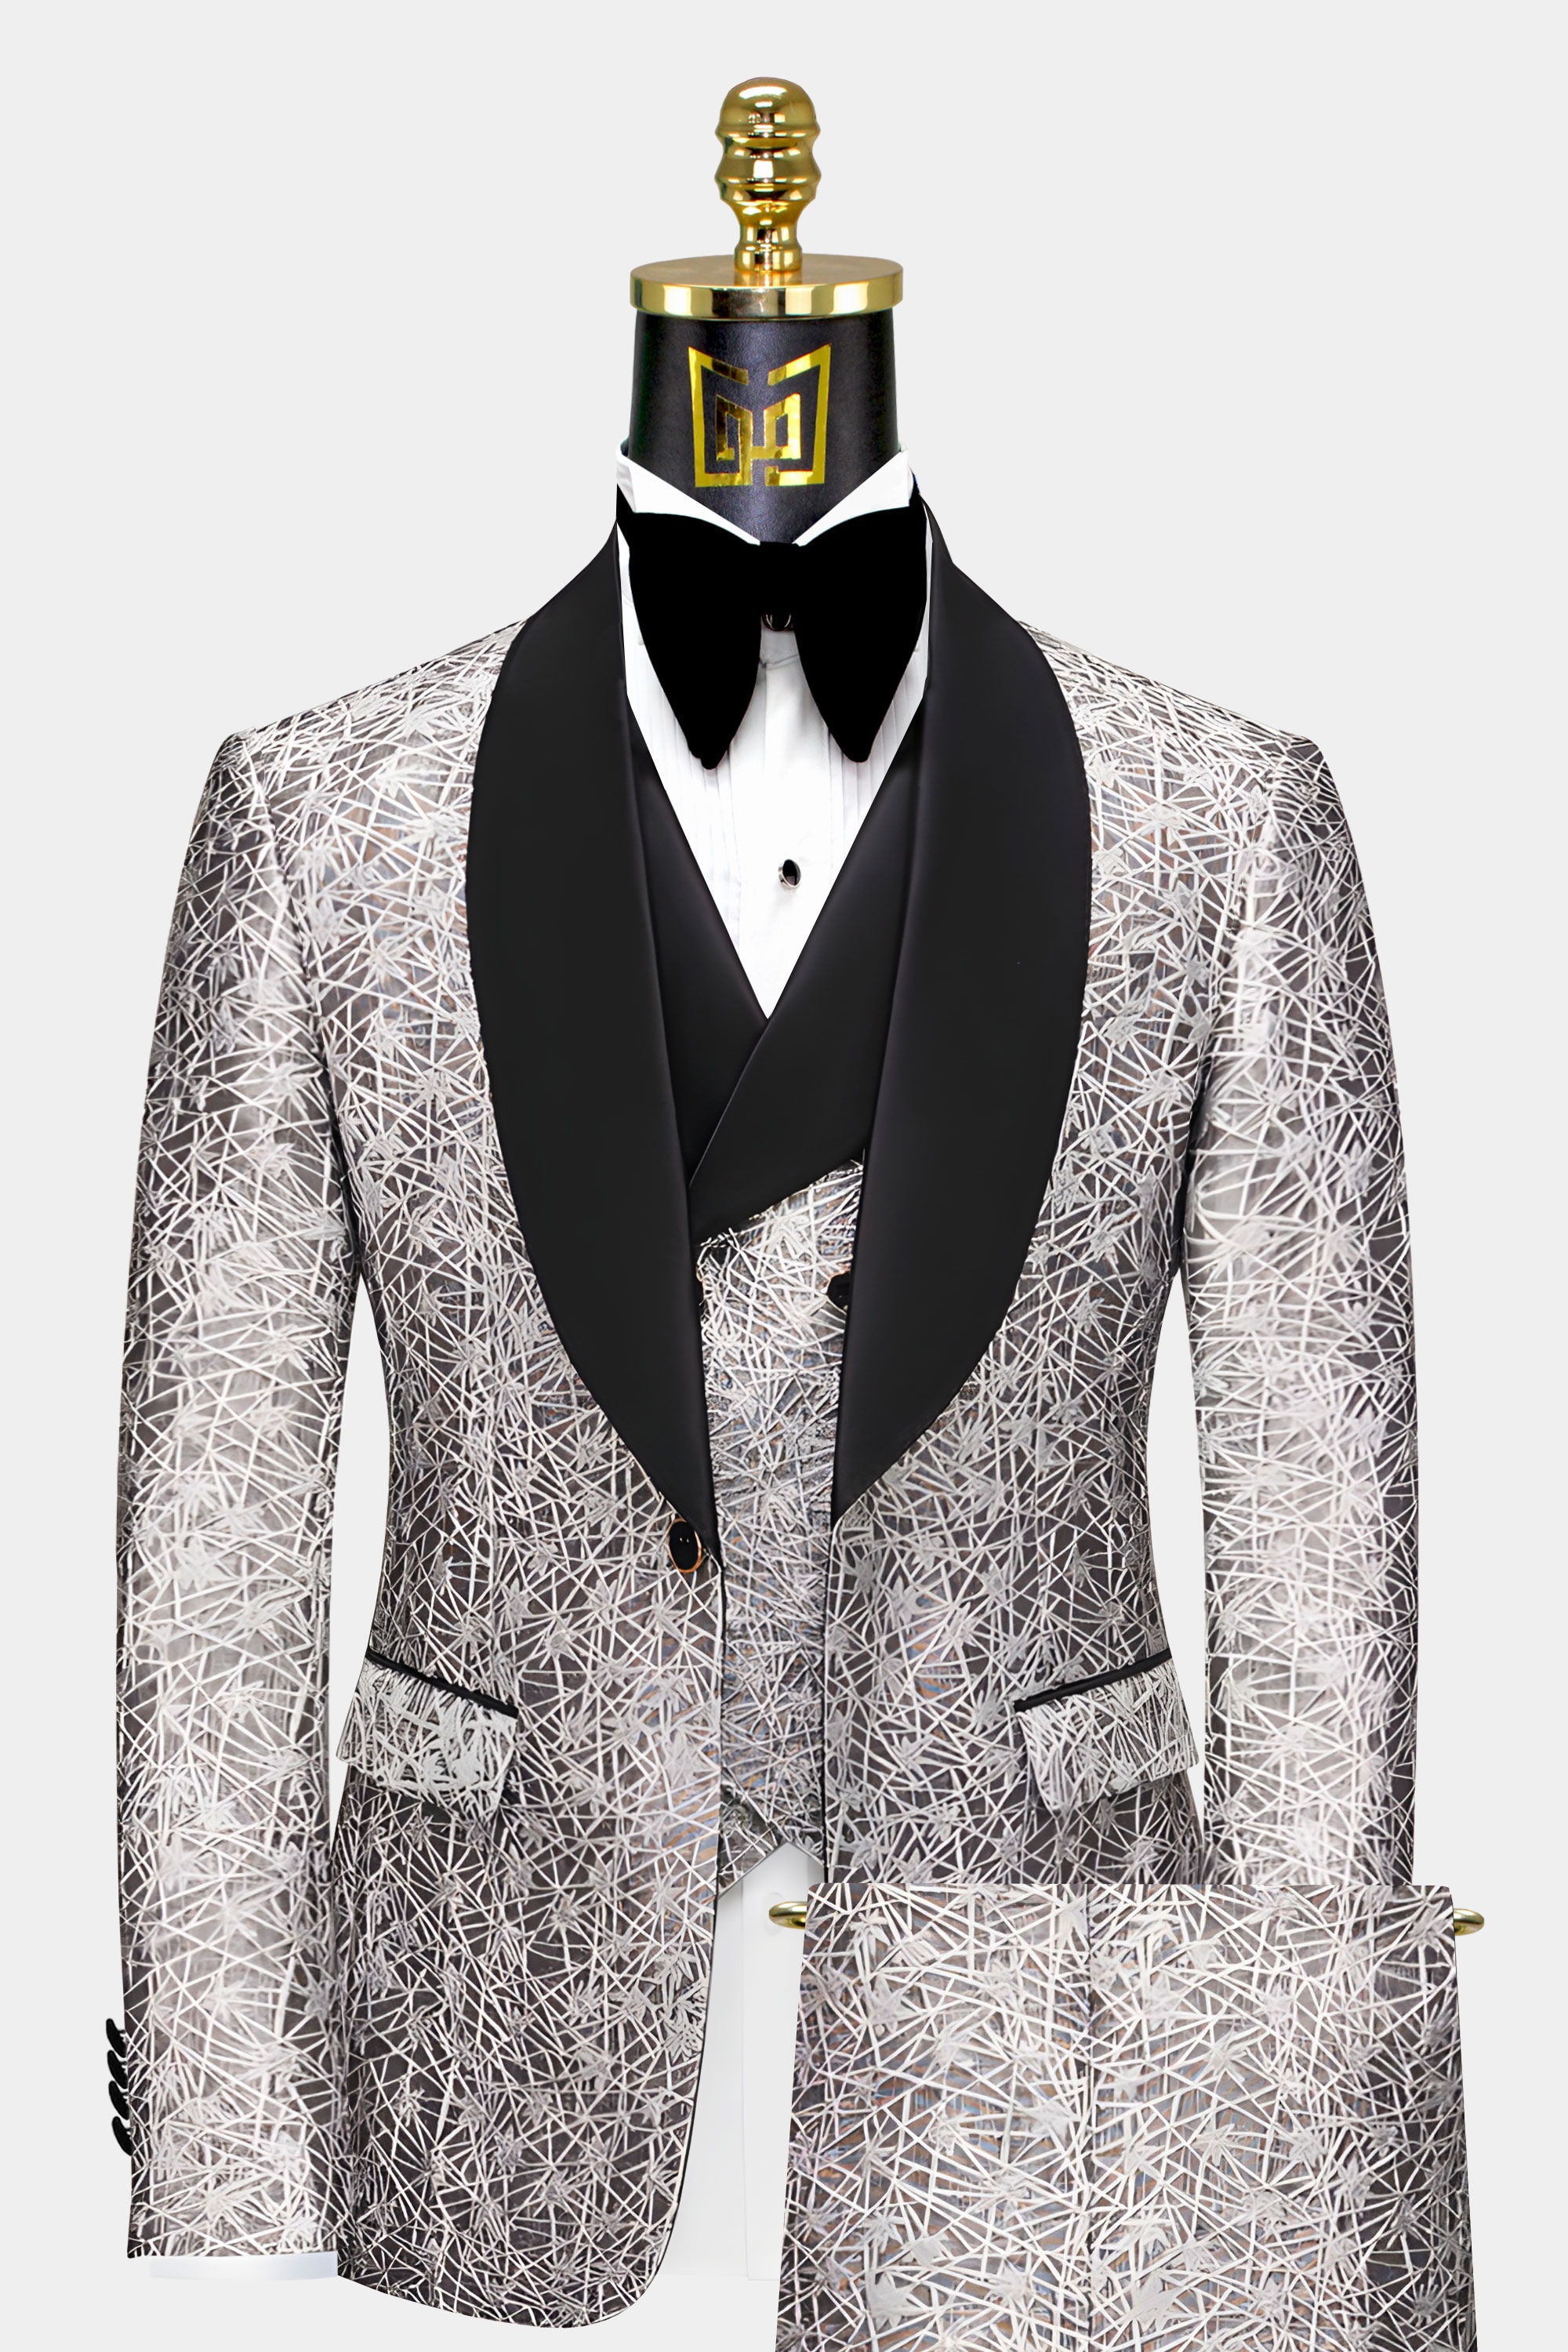 Mens-Silver-Tuxedo-Groom-Wedding-Prom-Suit-For-Guys-from-Gentlemansguru.com